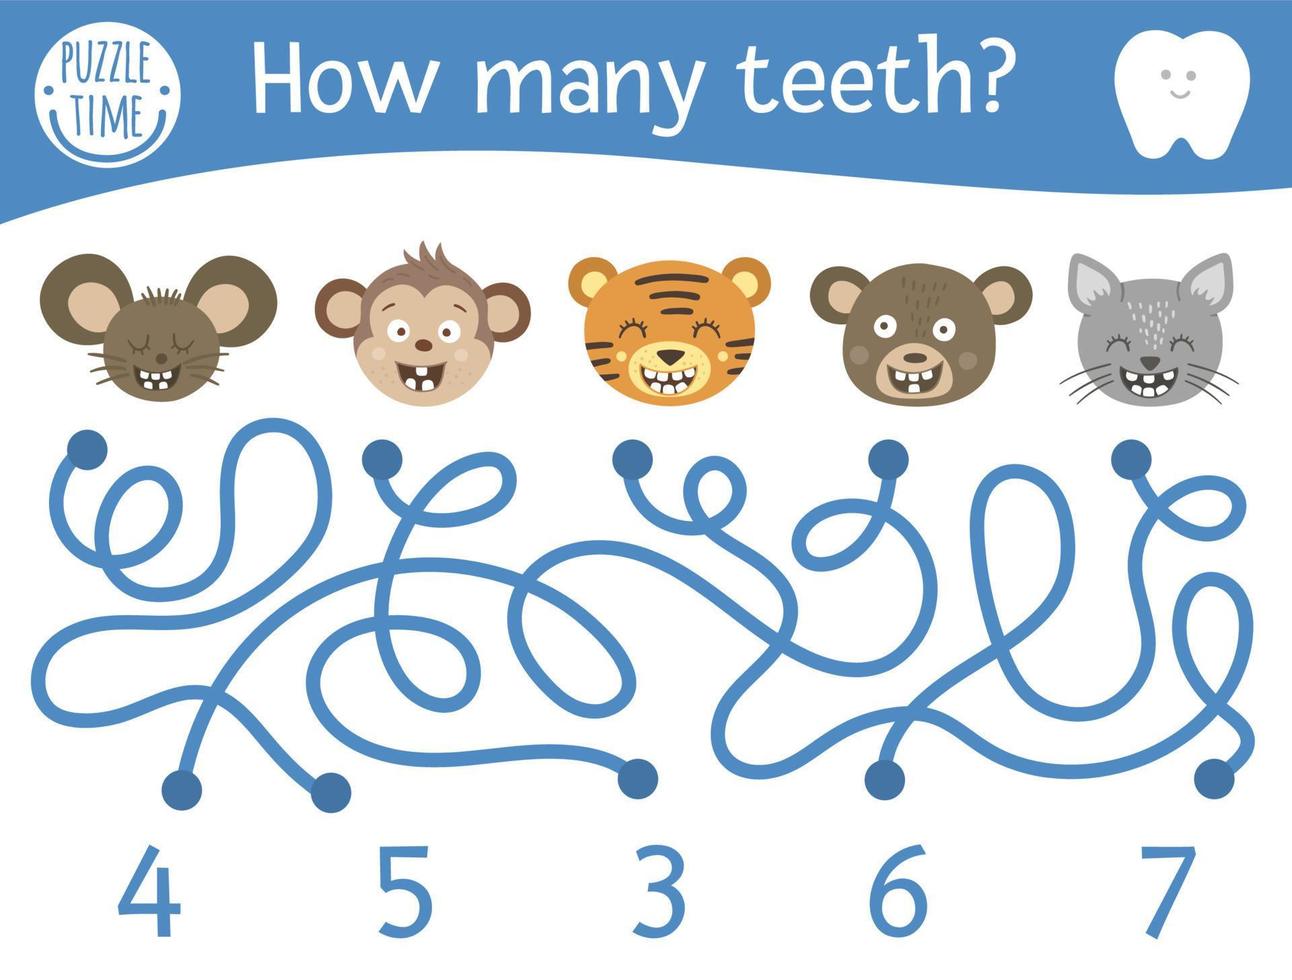 Zahnpflege-Labyrinth für Kinder. Mathe-Aktivität im Vorschulalter mit zahnigen Tieren. lustiges Puzzlespiel mit süßer Maus, Affe, Katze, Bär, Tiger. Zähllabyrinth für Kinder. wie viele zähne vektor